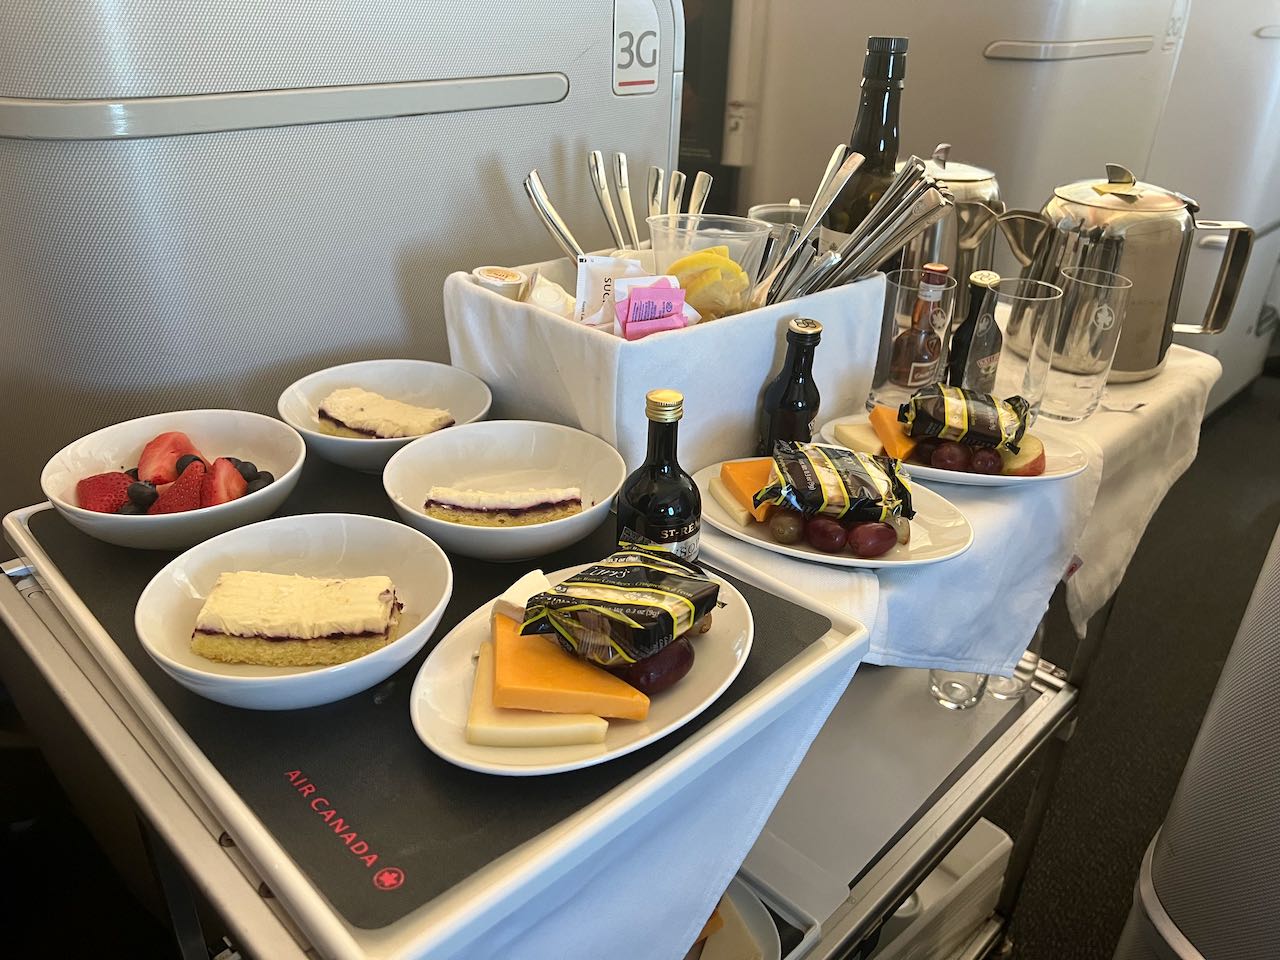 The Air Canada Business Class dessert cart.